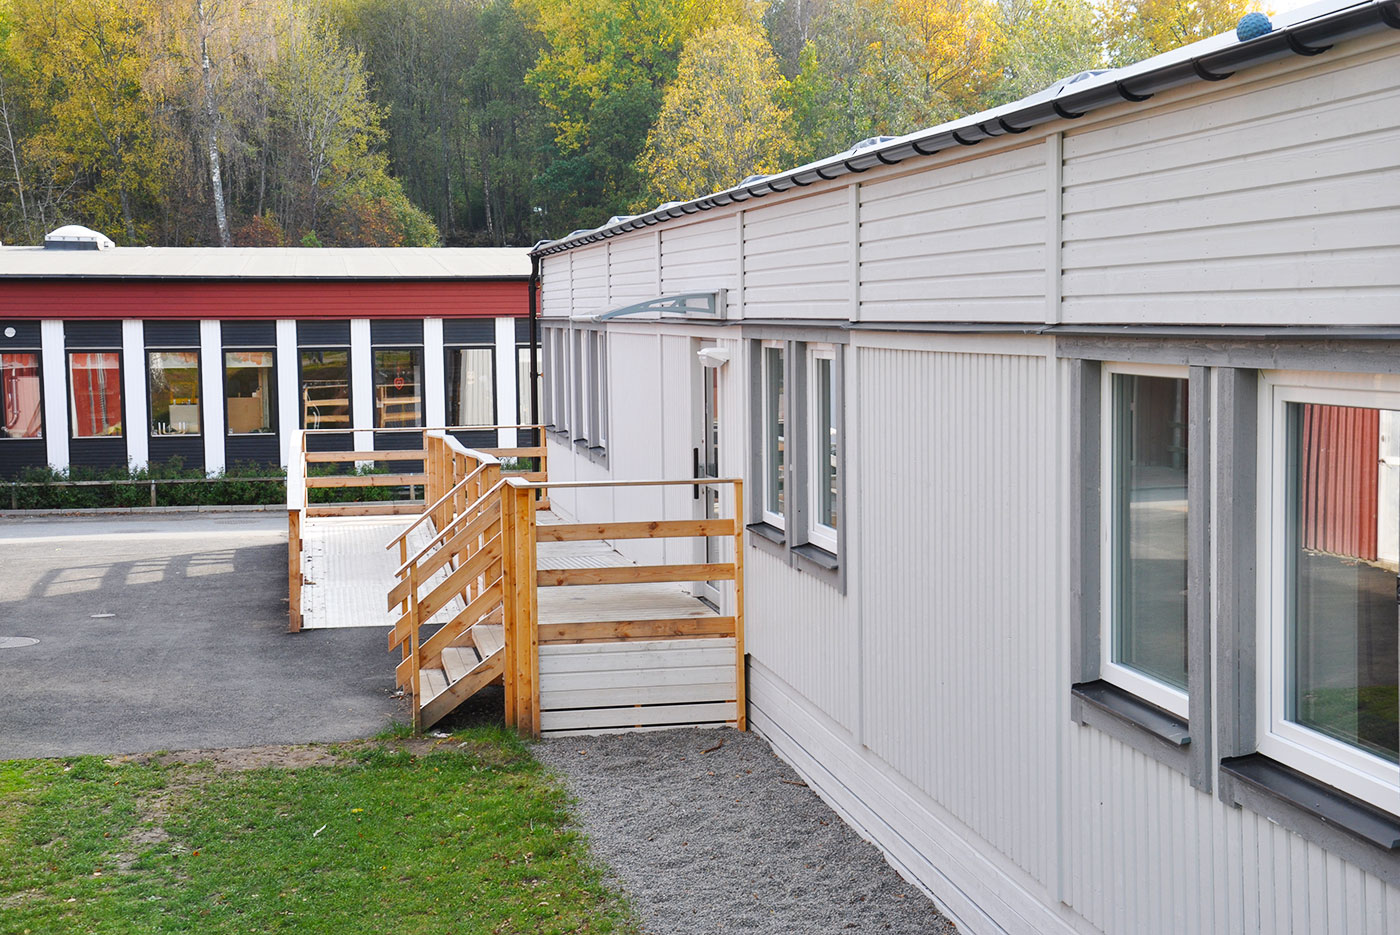 I Floda, Lerums kommun, ligger Berghultsskolan. Där har PCS uppfört en mindre skolpaviljong på totalt ca 240 kvadratmeter.